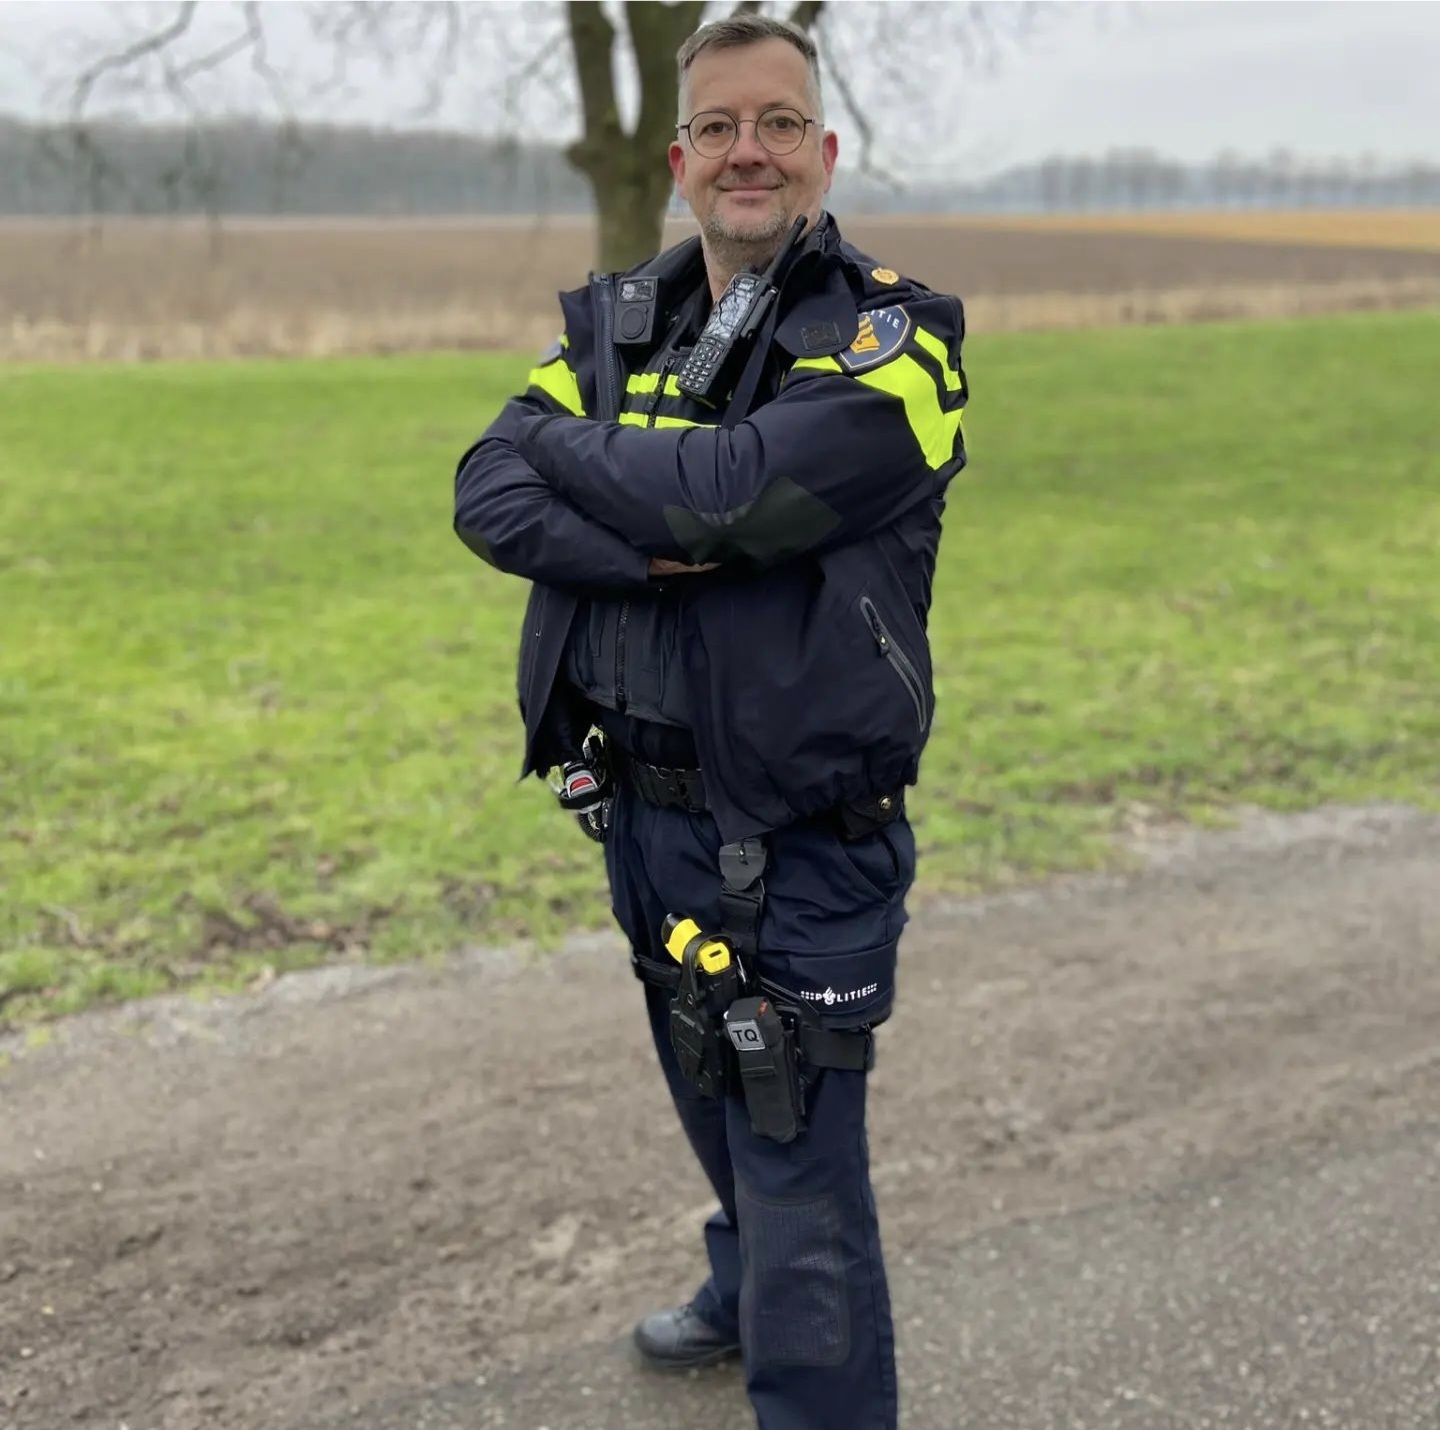 Martin Bekkenk stopt na 5 jaar als wijkagent van Asperen, Heukelum en Spijk